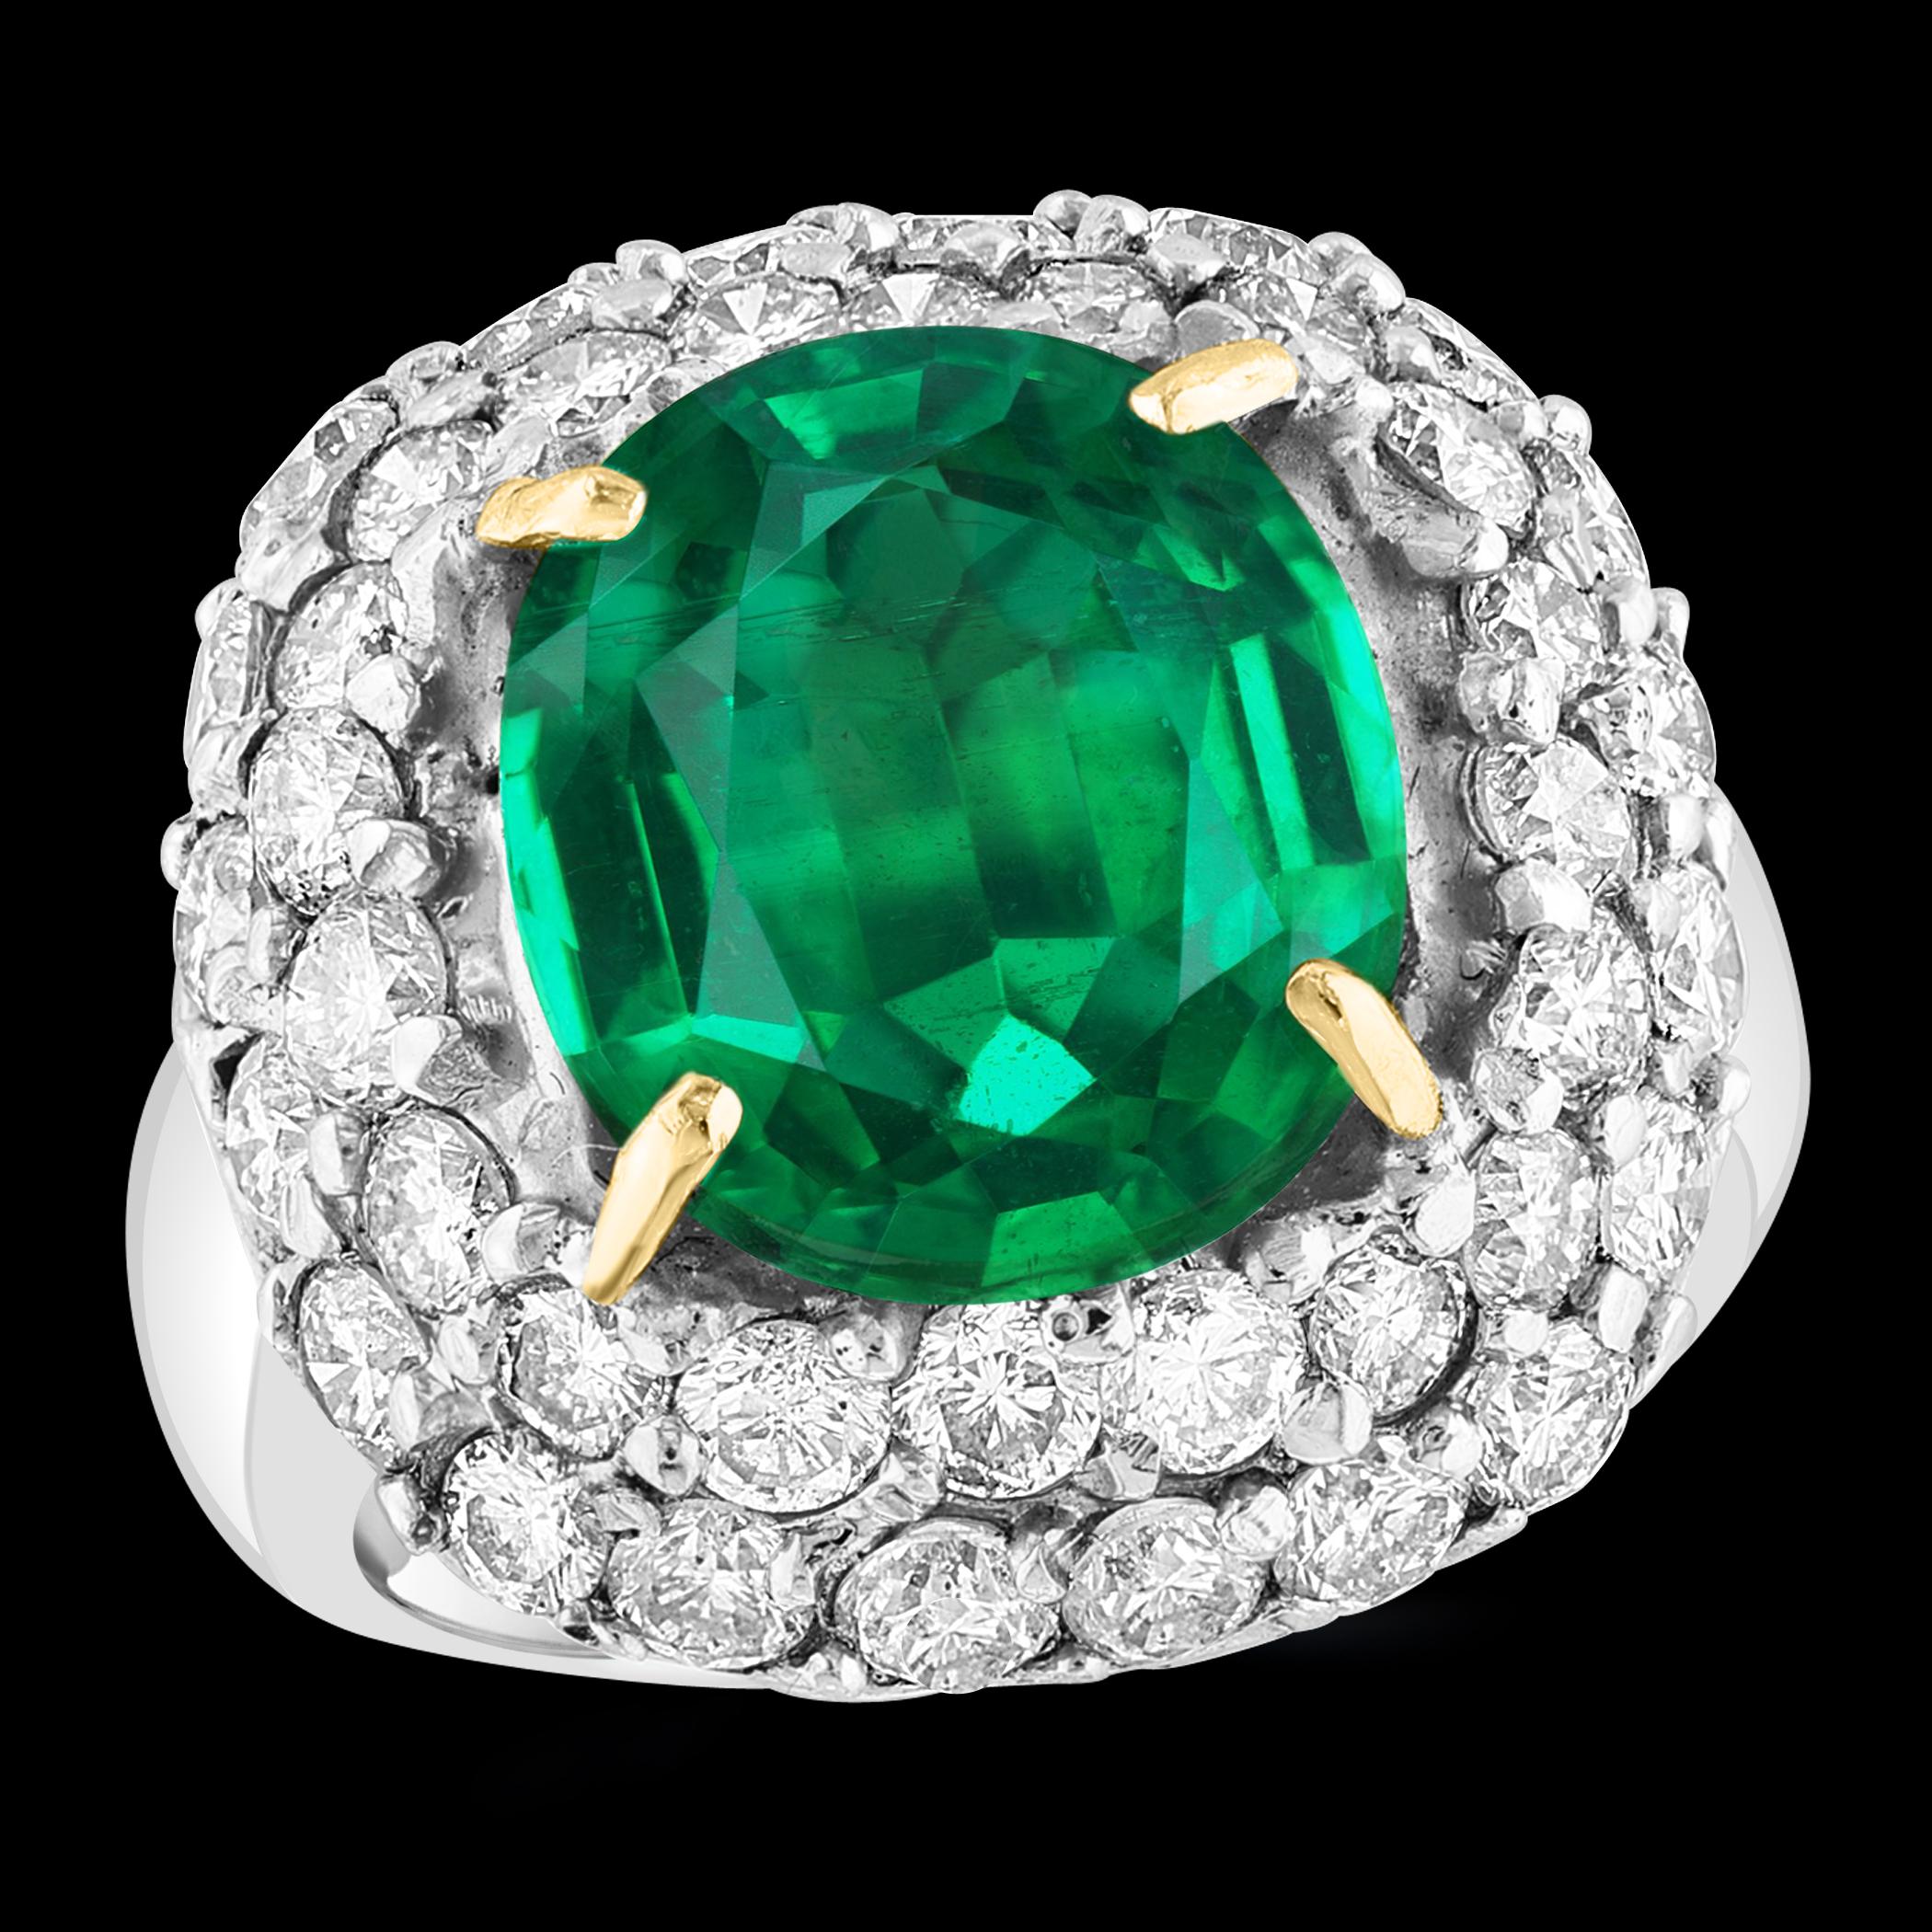 Dieser atemberaubende Ring besteht aus einem kolumbianischen Smaragd im Kissenschliff mit 7 Karat und 3,5 Karat runden Brillanten in einer Platinfassung. Der Smaragd ist  absolut prächtig, farblich sehr begehrt und von äußerst feiner Qualität, mit